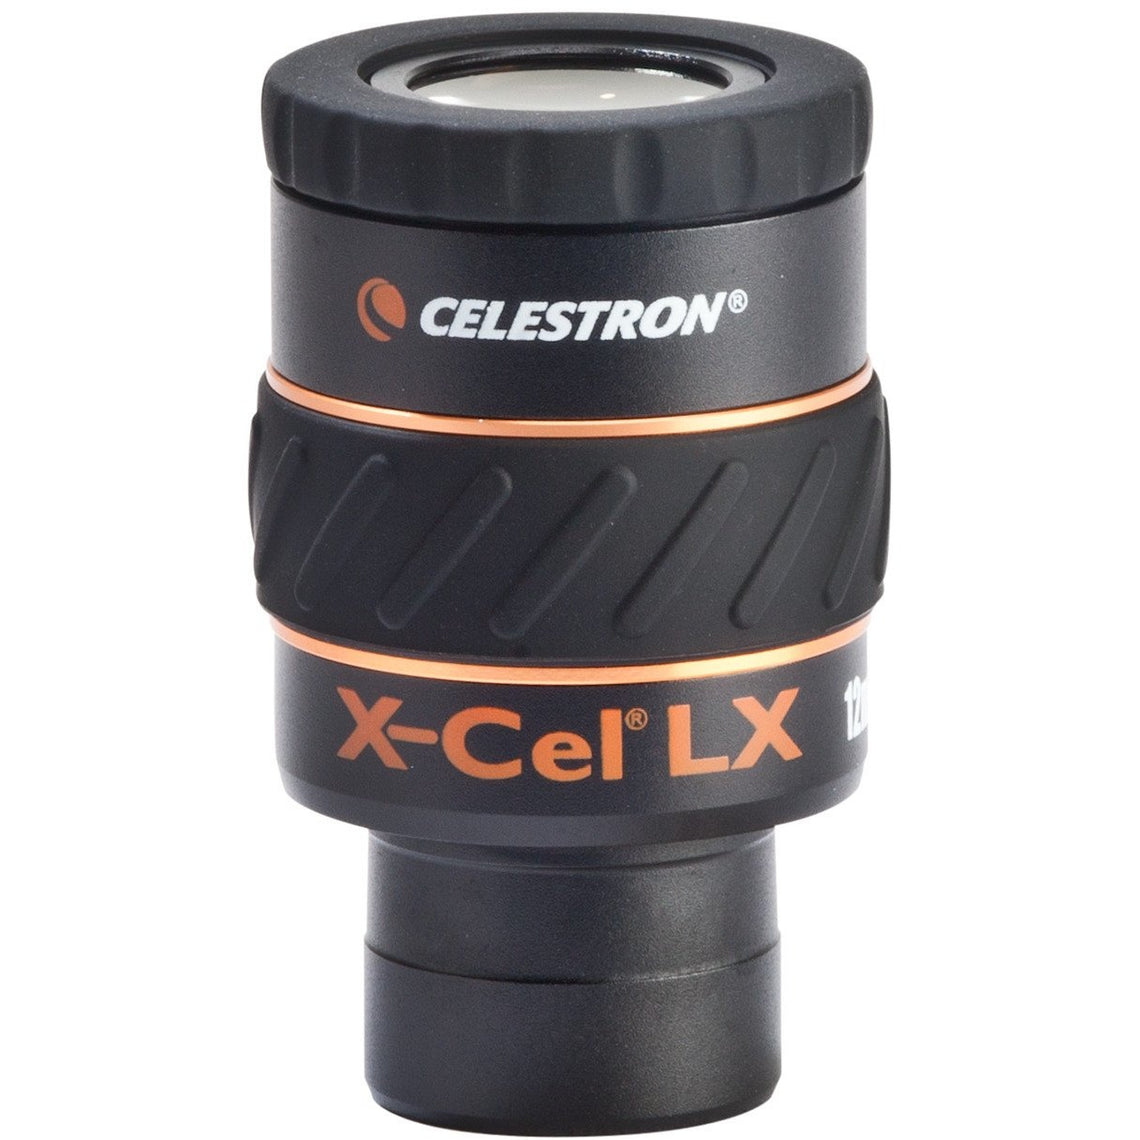 Celestron X-CEL LX Series Eyepiece - 1.25 Inch